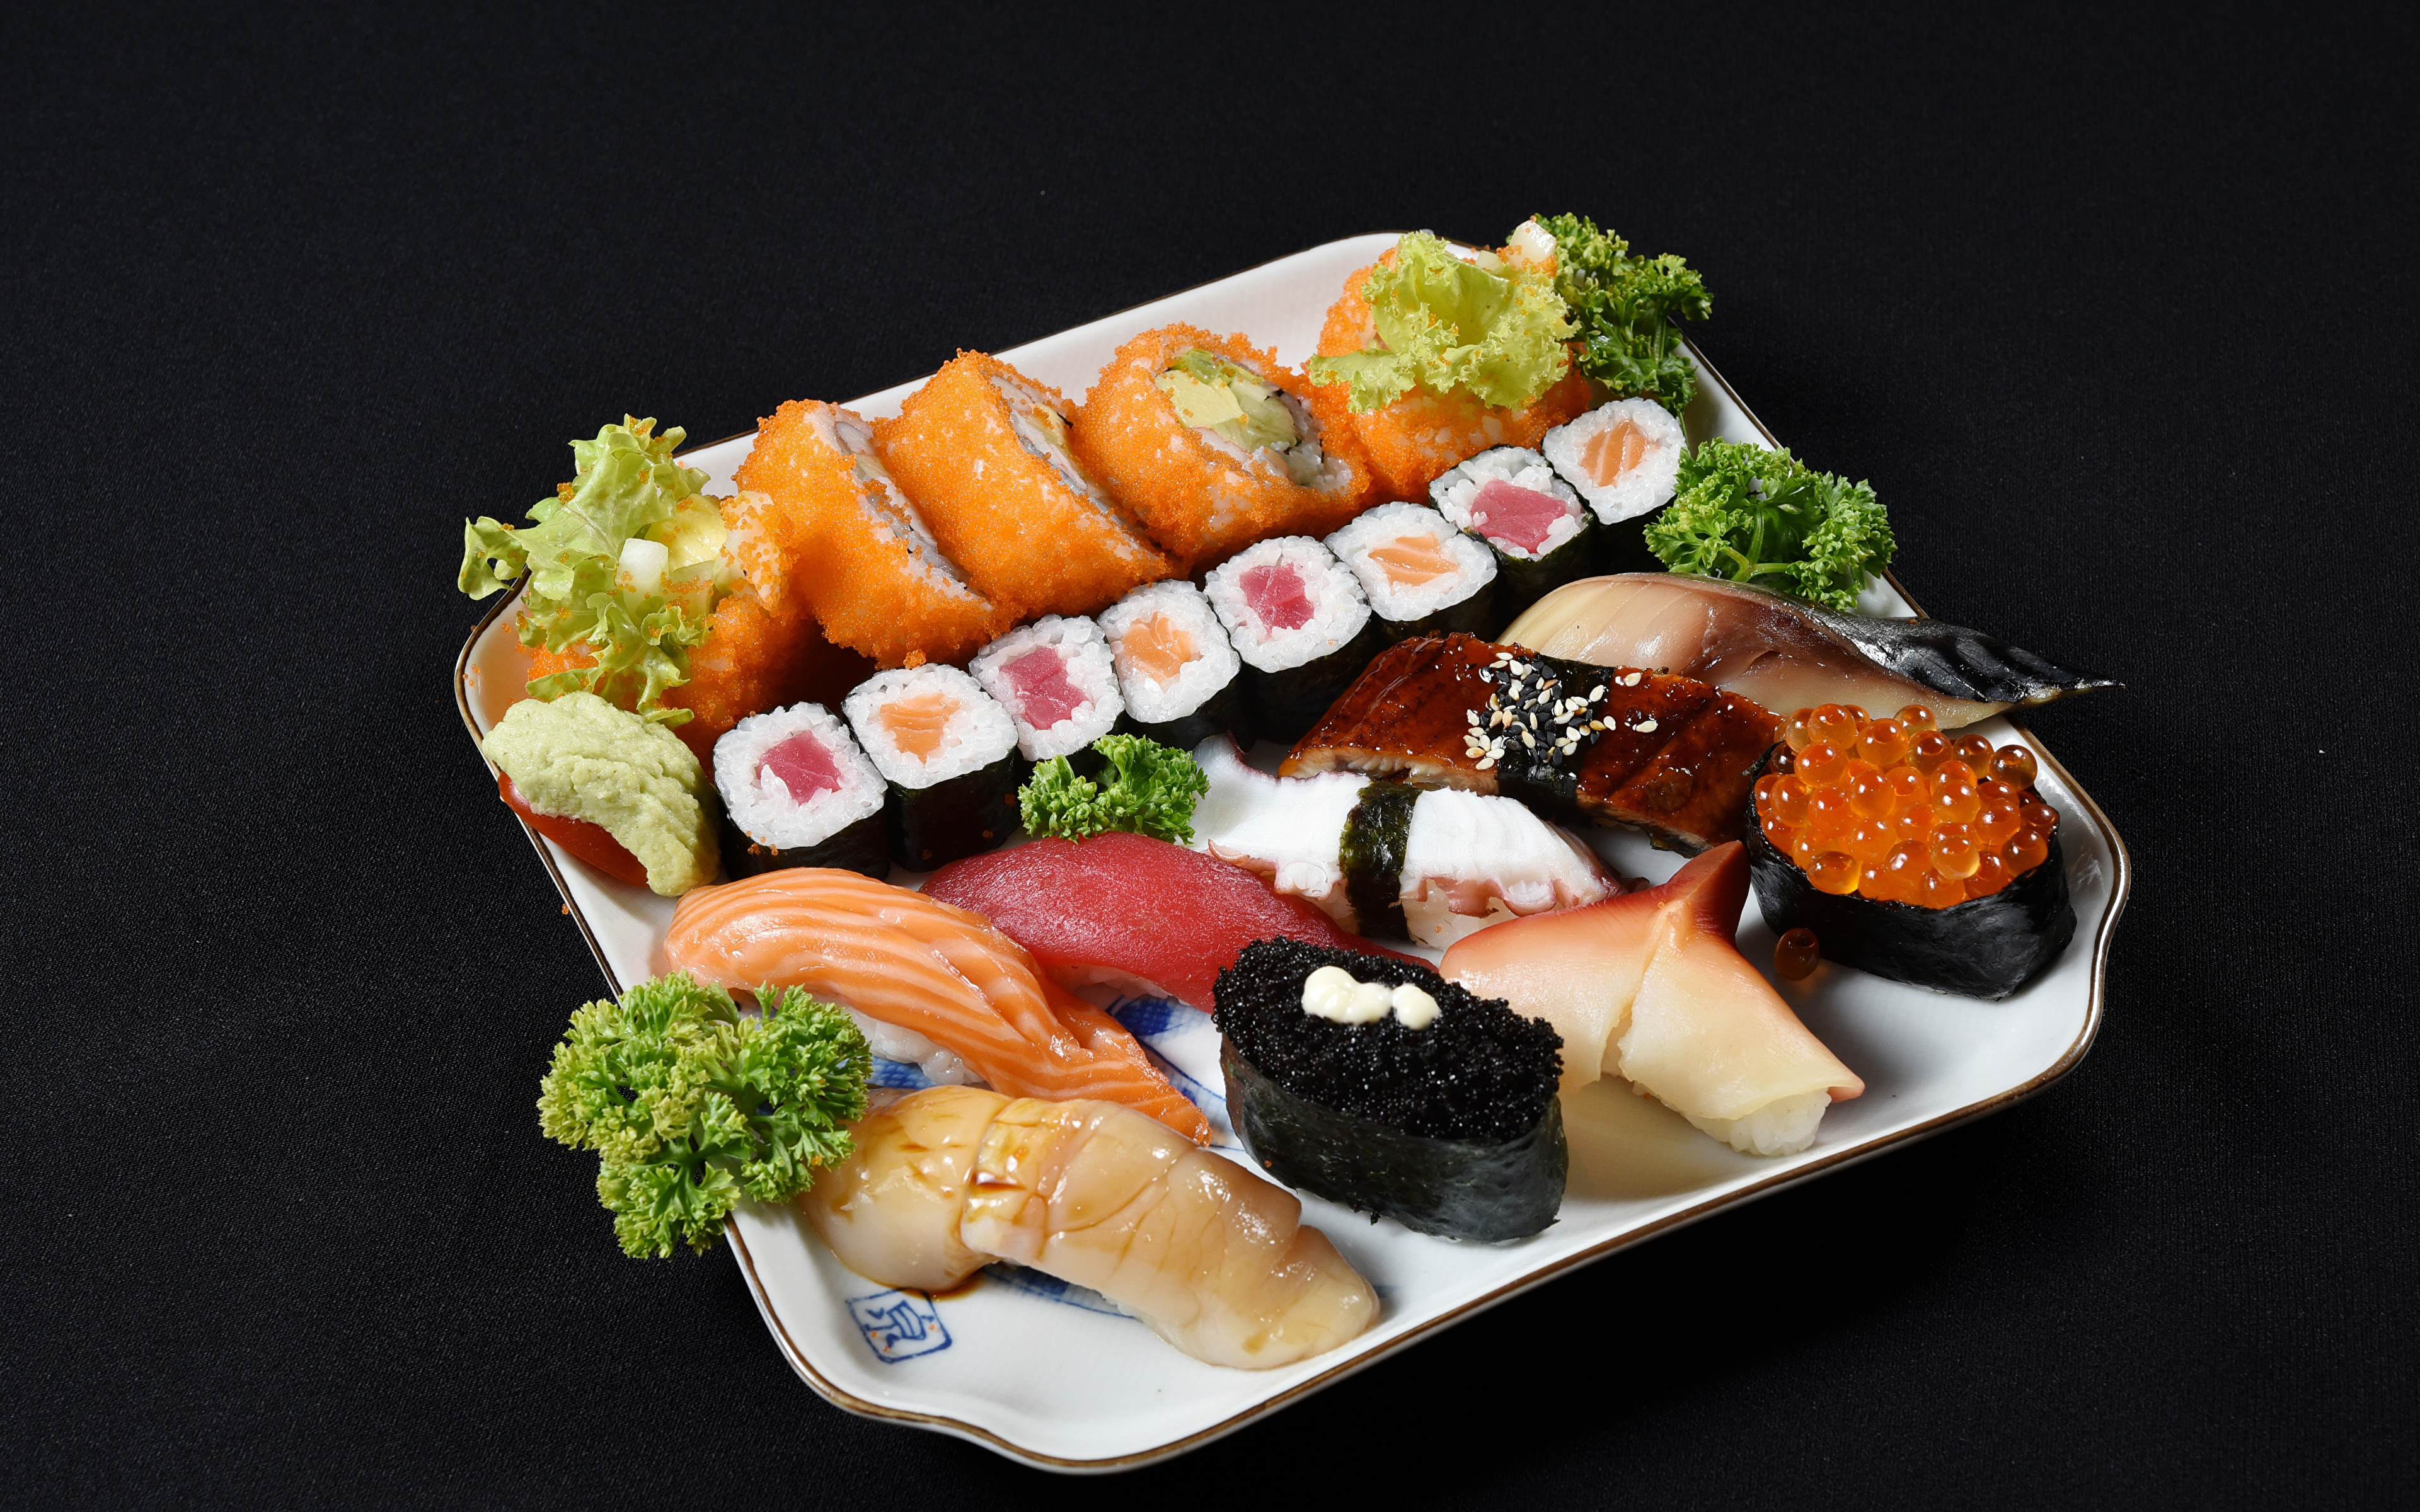 3840x2400 Fruto do mar Sushi Peixes - Alimentos Fundo preto comida Alimentos